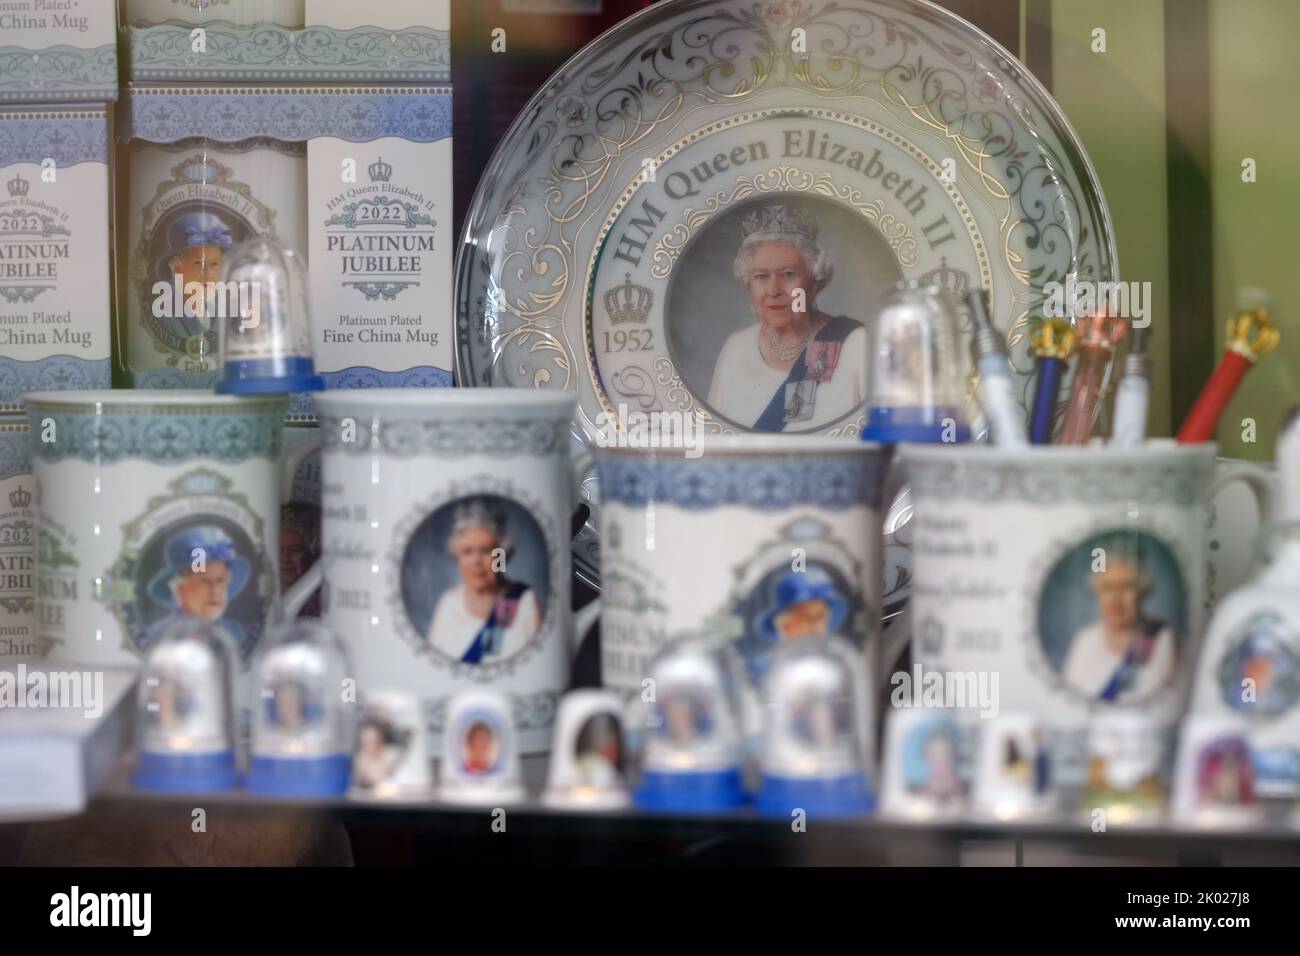 Nach dem Tod von Königin Elizabeth II. Am Donnerstag werden in einem Schaufenster in der Nähe von Windsor Castle, in der Nähe von Burkshire, Souvenirs aus dem Platin-Jubiläum der Königin Elizabeth II. Ausgestellt. Bilddatum: Freitag, 9. September 2022. Stockfoto